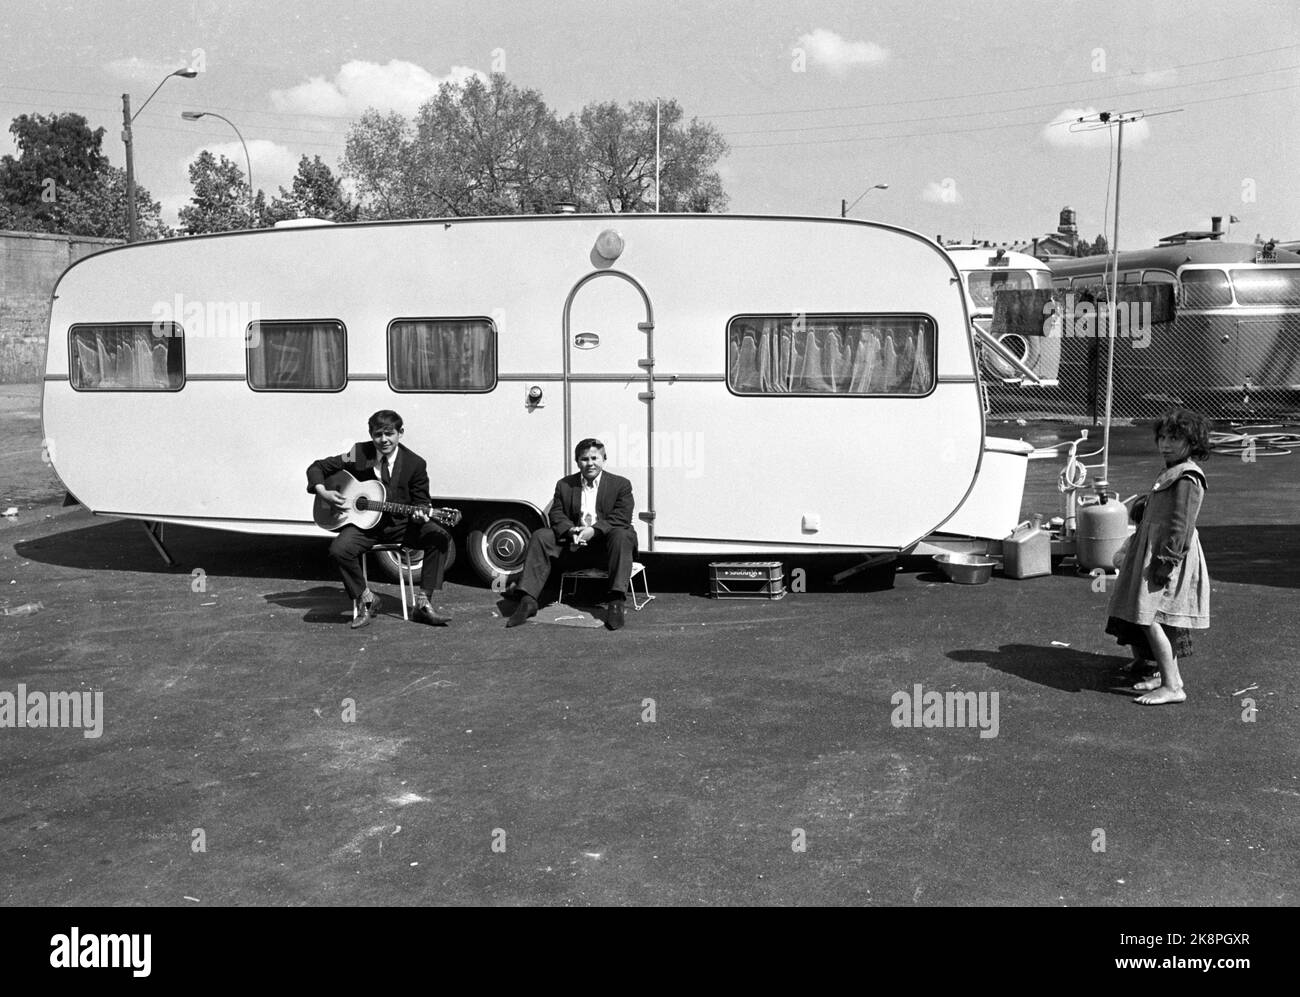 Oslo Juni 1968 Fast einhundert Zigeuner kamen im Frühjahr 1968 nach Oslo. Sie erhielten einen Platz auf dem Gasplot in Oslo East. Jeden Tag gibt es Menschen, die sie anschauen wollen. Kinder spielen vor einem Wohnwagen, wo zwei Erwachsene sind. Ein Mann spielt Gitarre. Foto: Sverre A. Børretzen / Aktuell / NTB Stockfoto